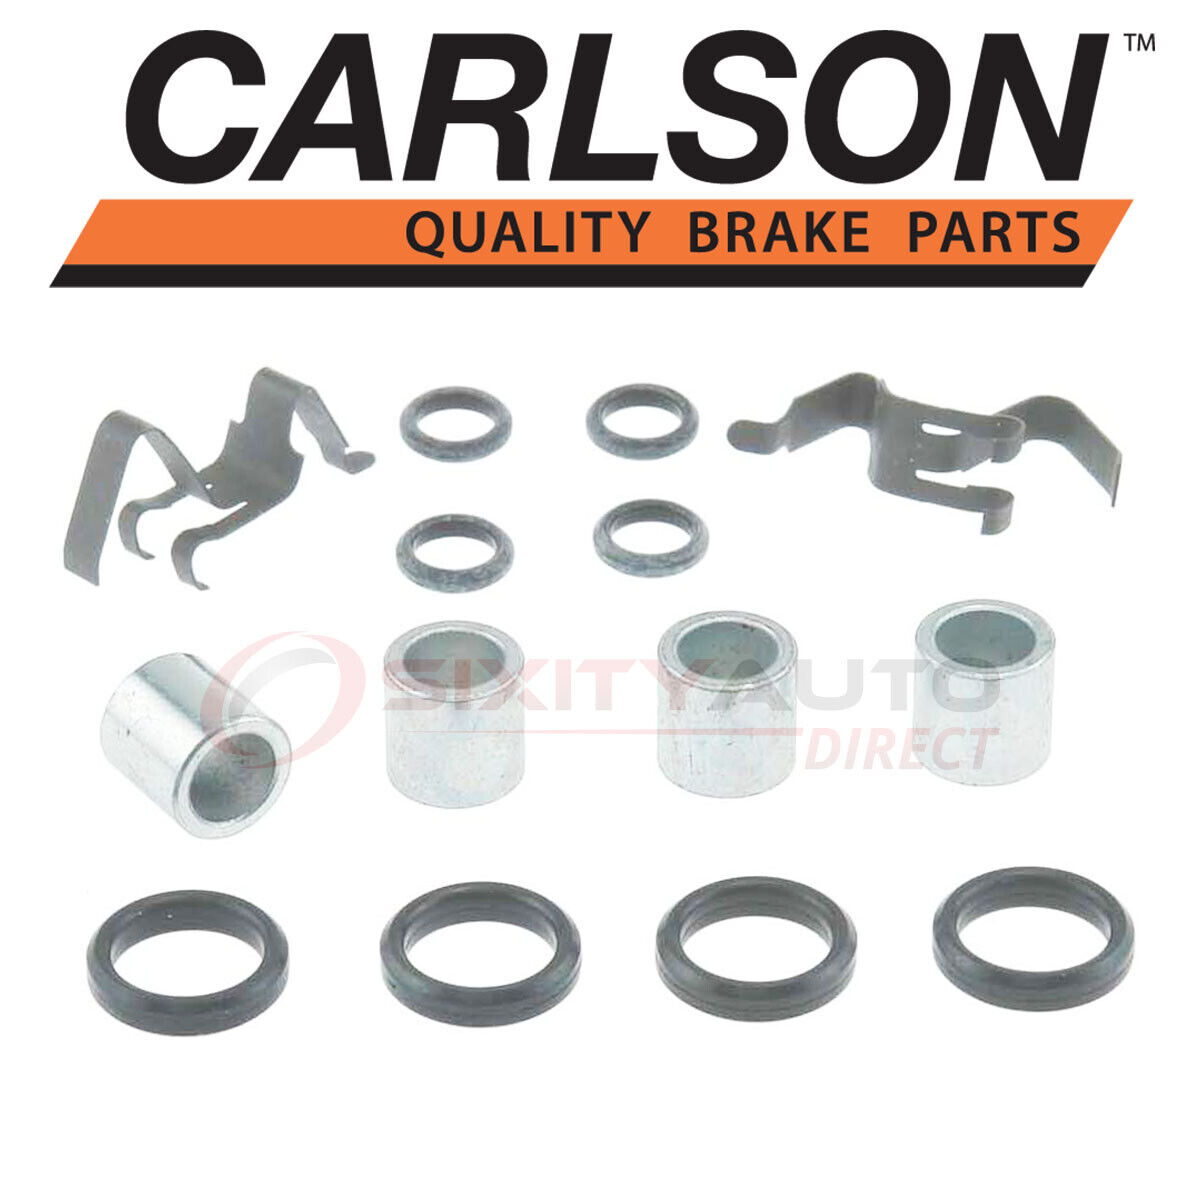 Carlson Front Disc Brake Hardware Kit for 1978-1987 Oldsmobile Cutlass Salon pr